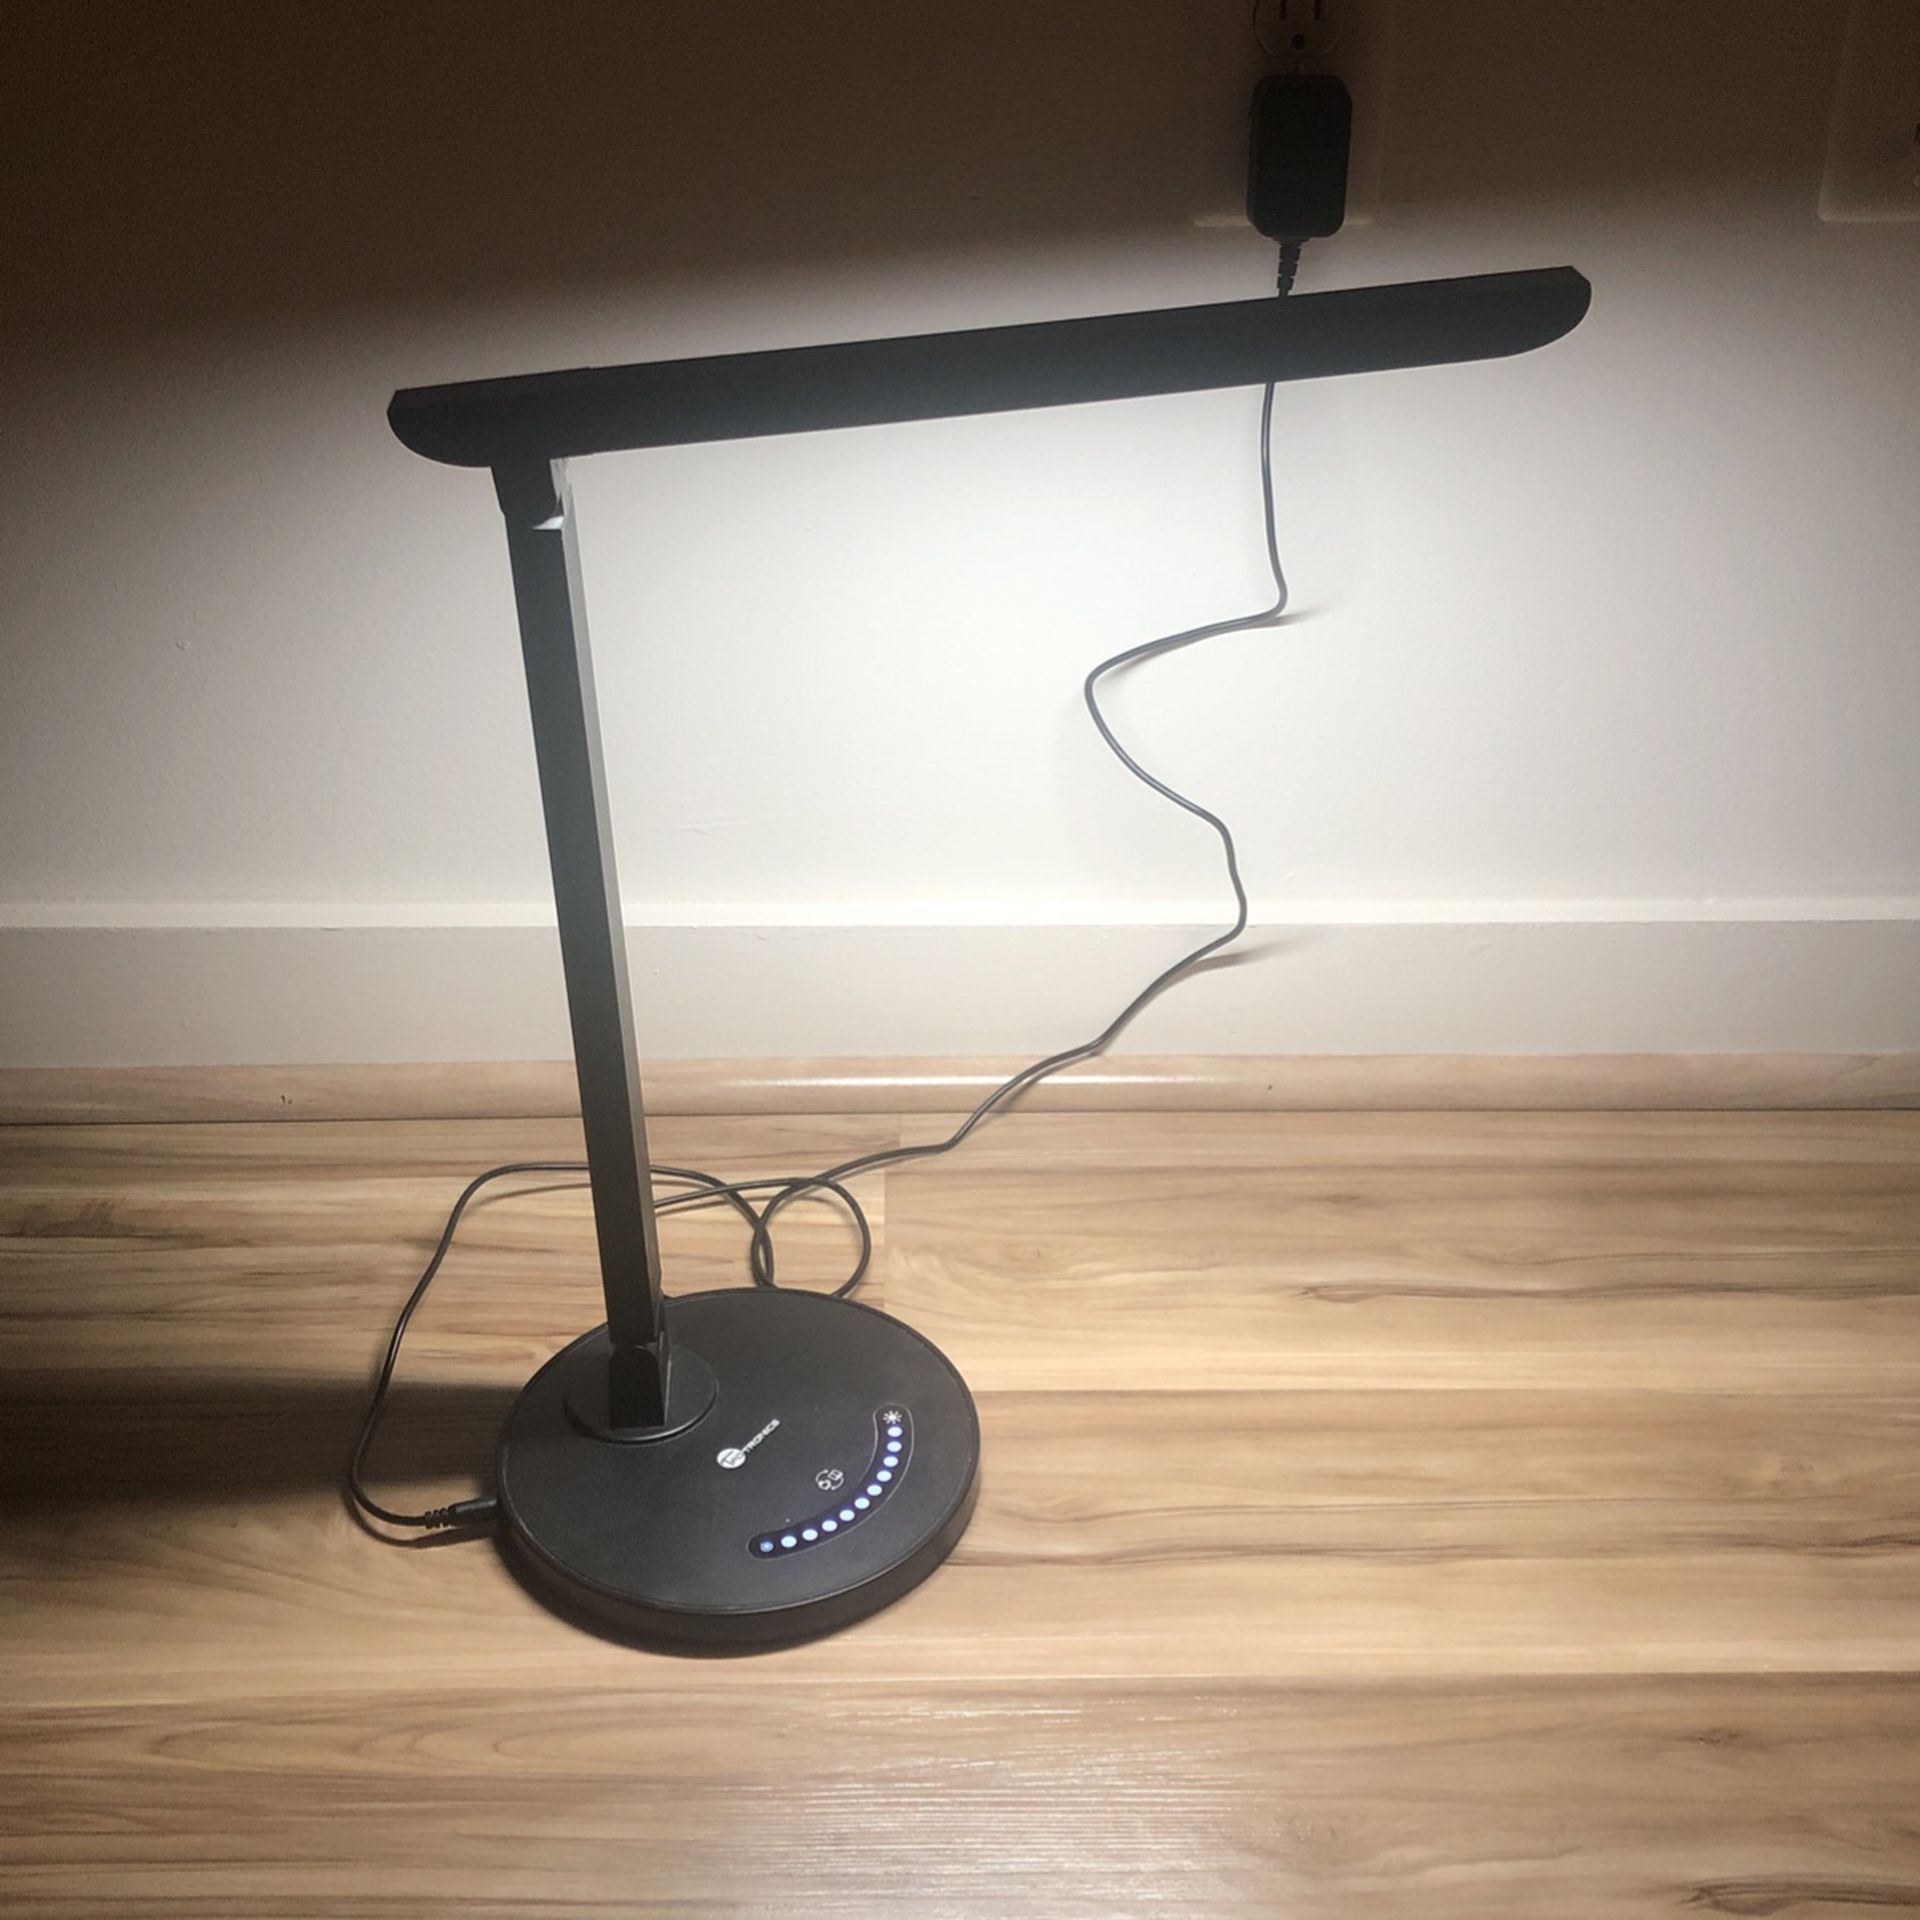 Taotronics Desk Lamp